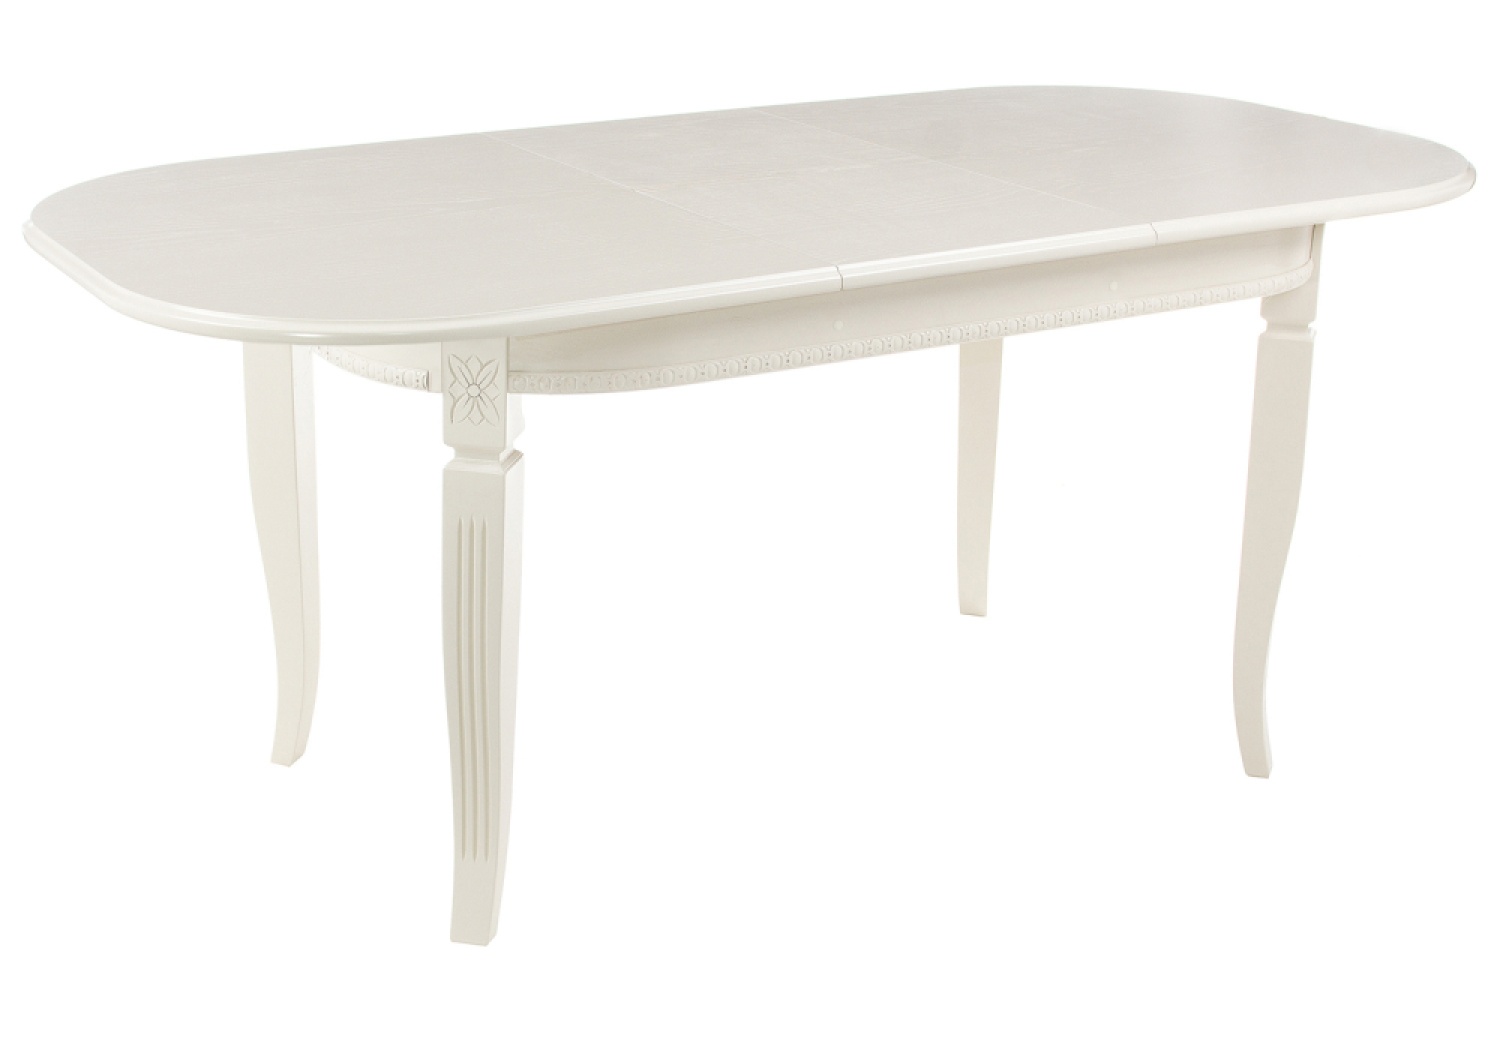 Деревянный стол Romeo 130(170)х85х75 без патины / молочный